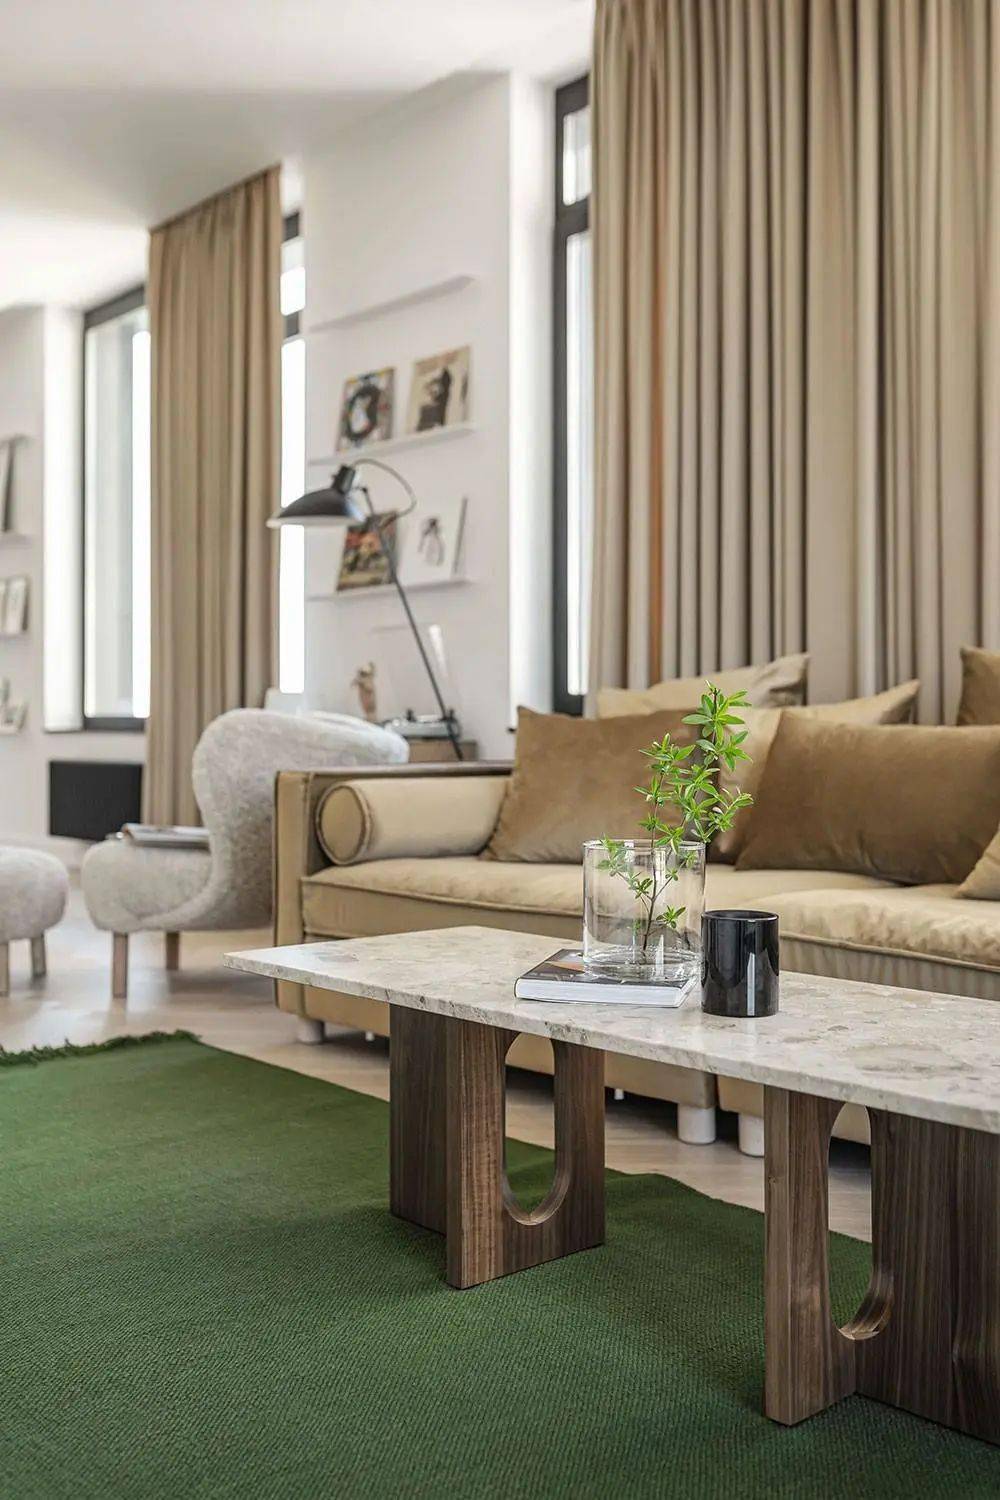 棕色皮质沙发倚窗而立,地面全部用木质地板装饰,卡其色窗帘与沙发